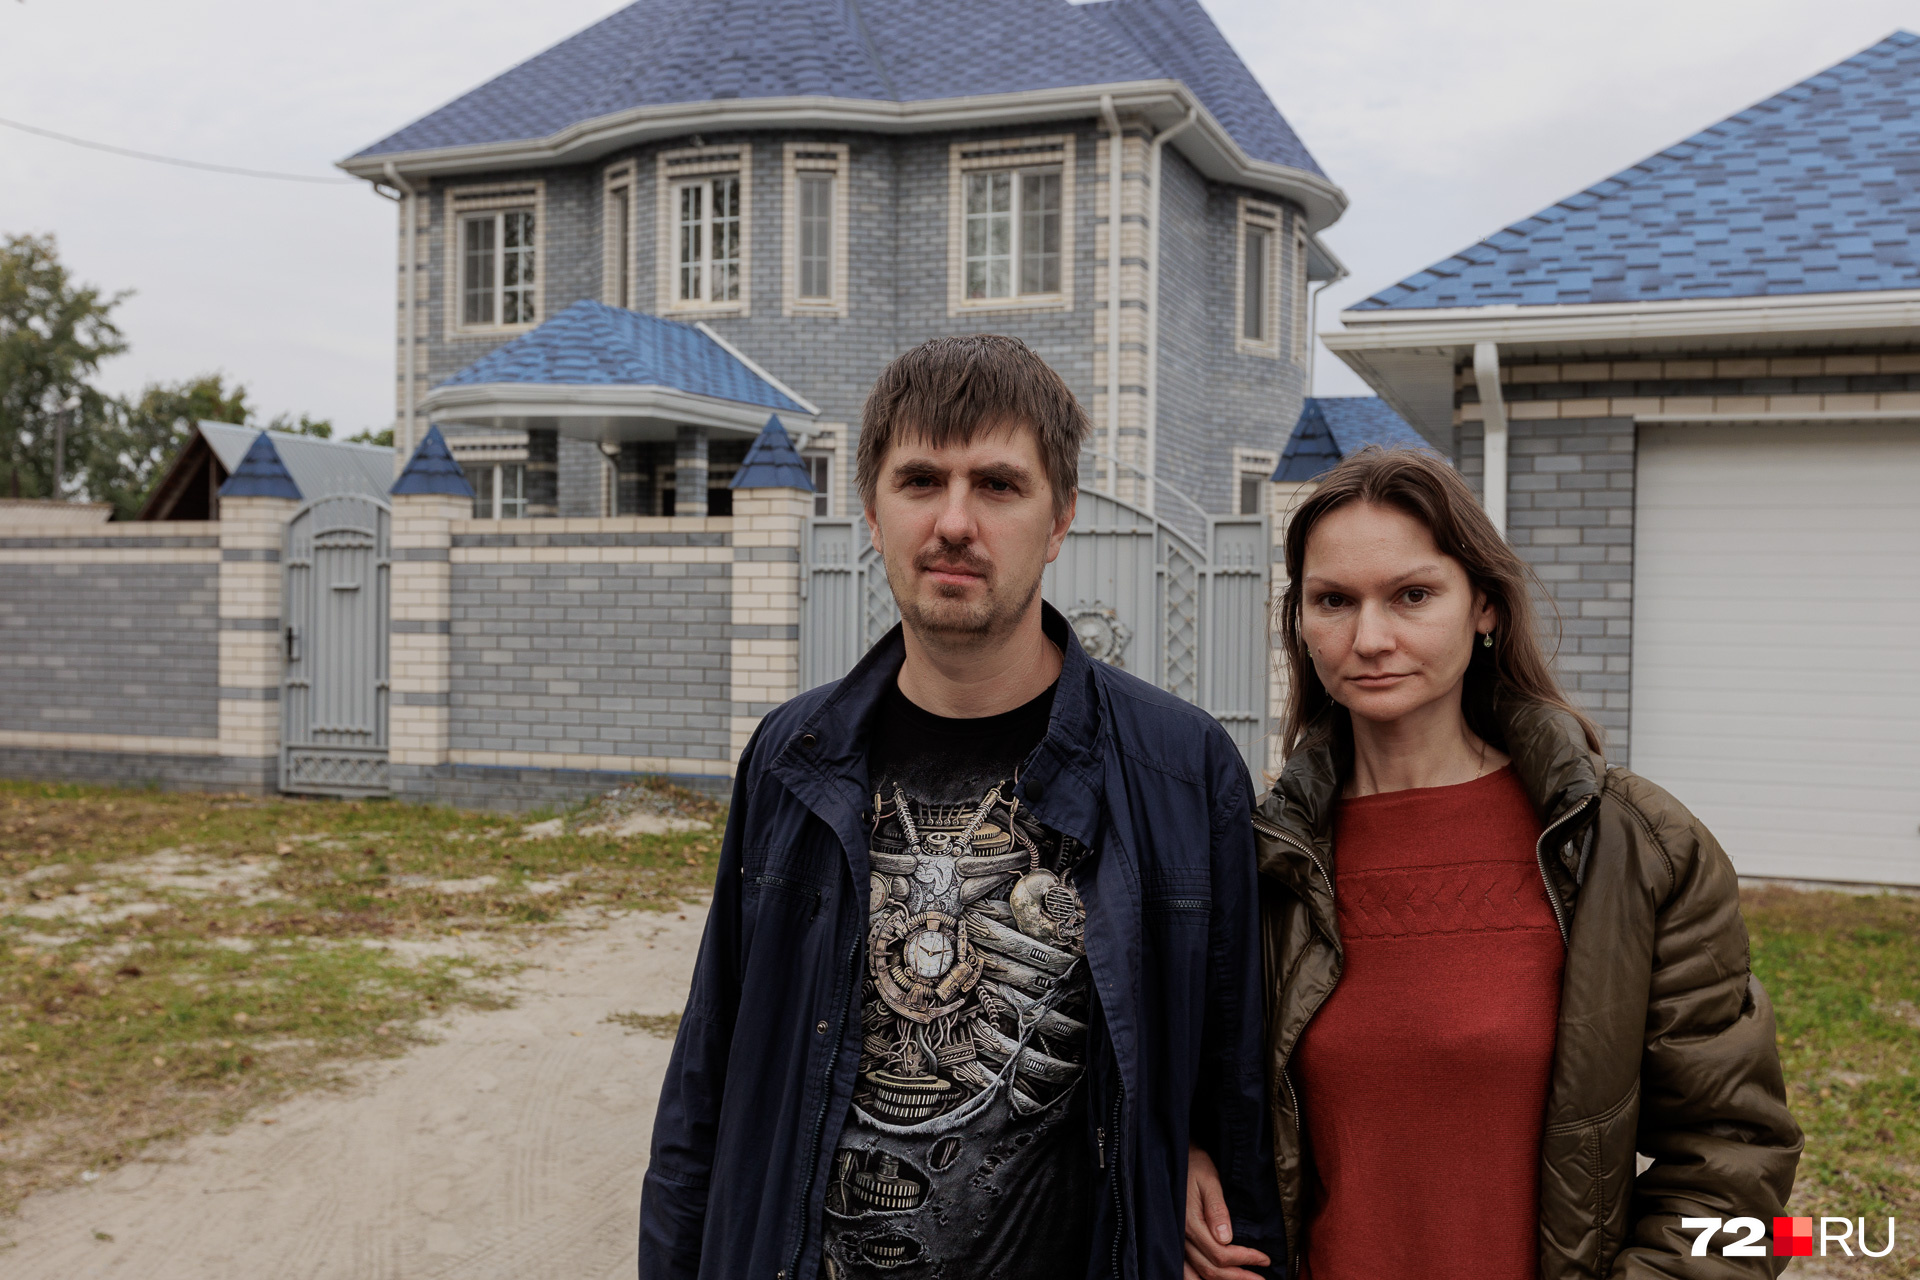 Ирина и Владимир заехали в свой дом только в 2020 году. По их словам, они вложили очень много сил и средств, чтобы его построить — для полного счастья им осталось только отремонтировать крыльцо